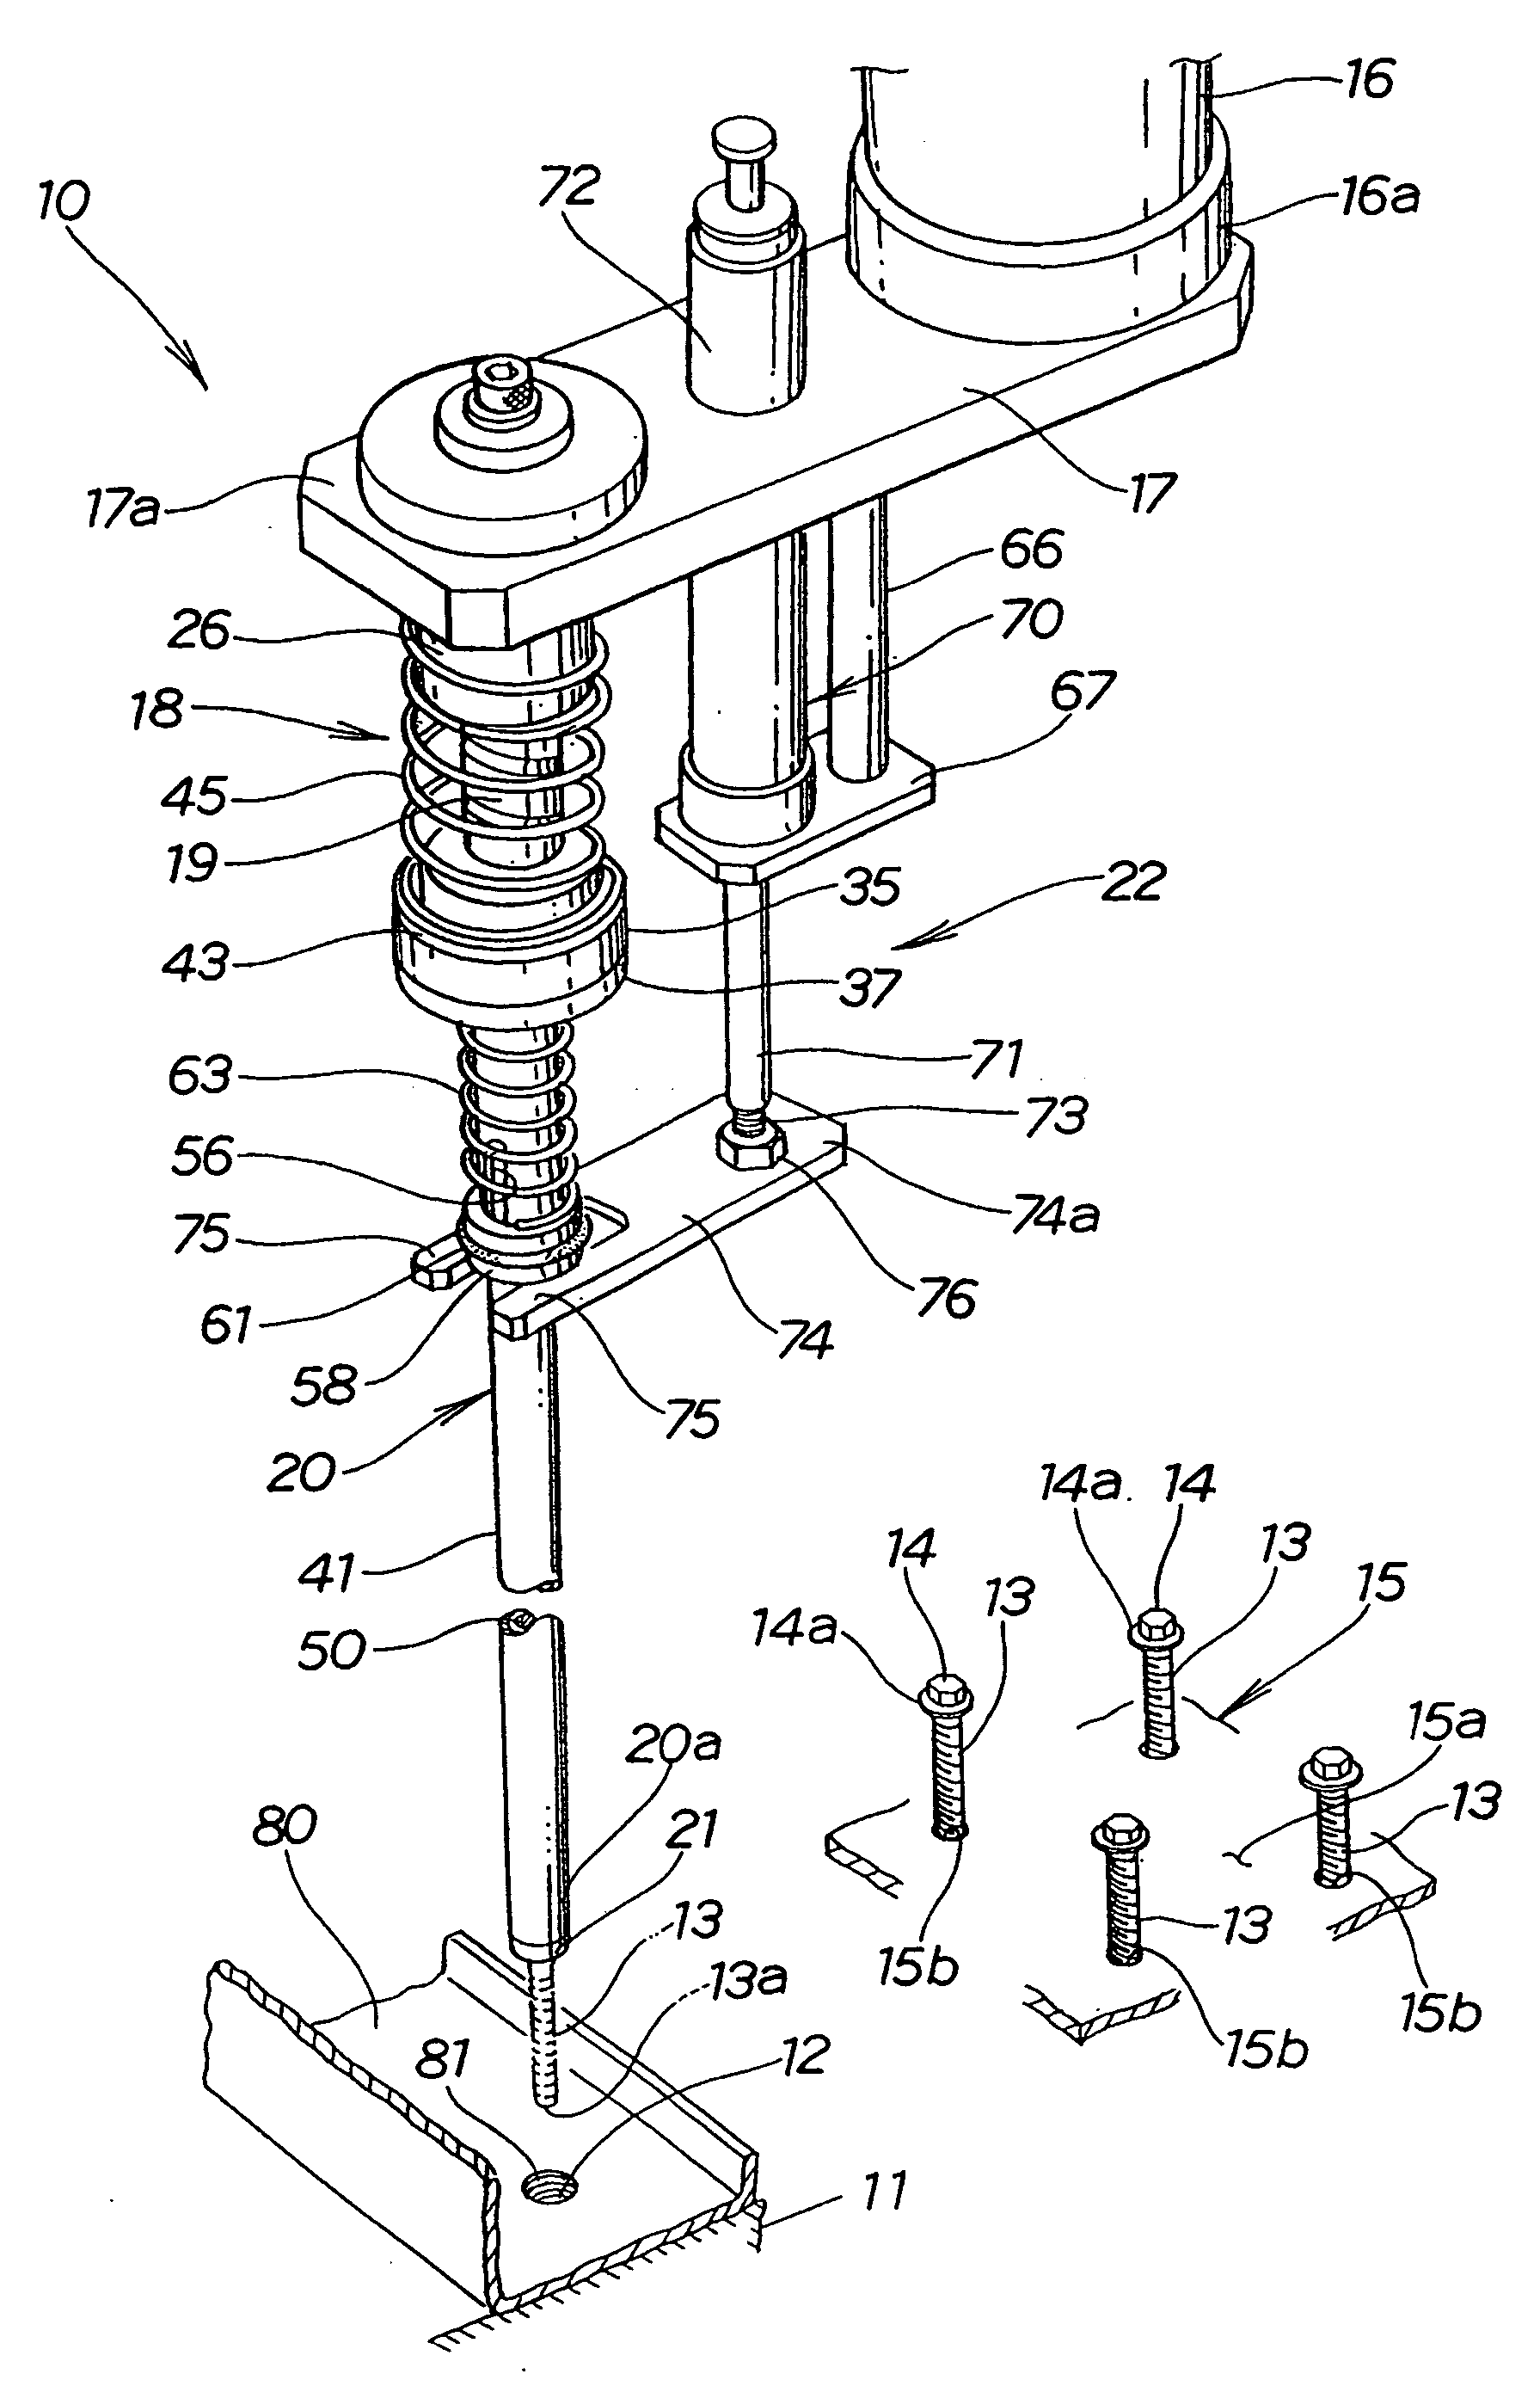 Apparatus for tightening threaded member